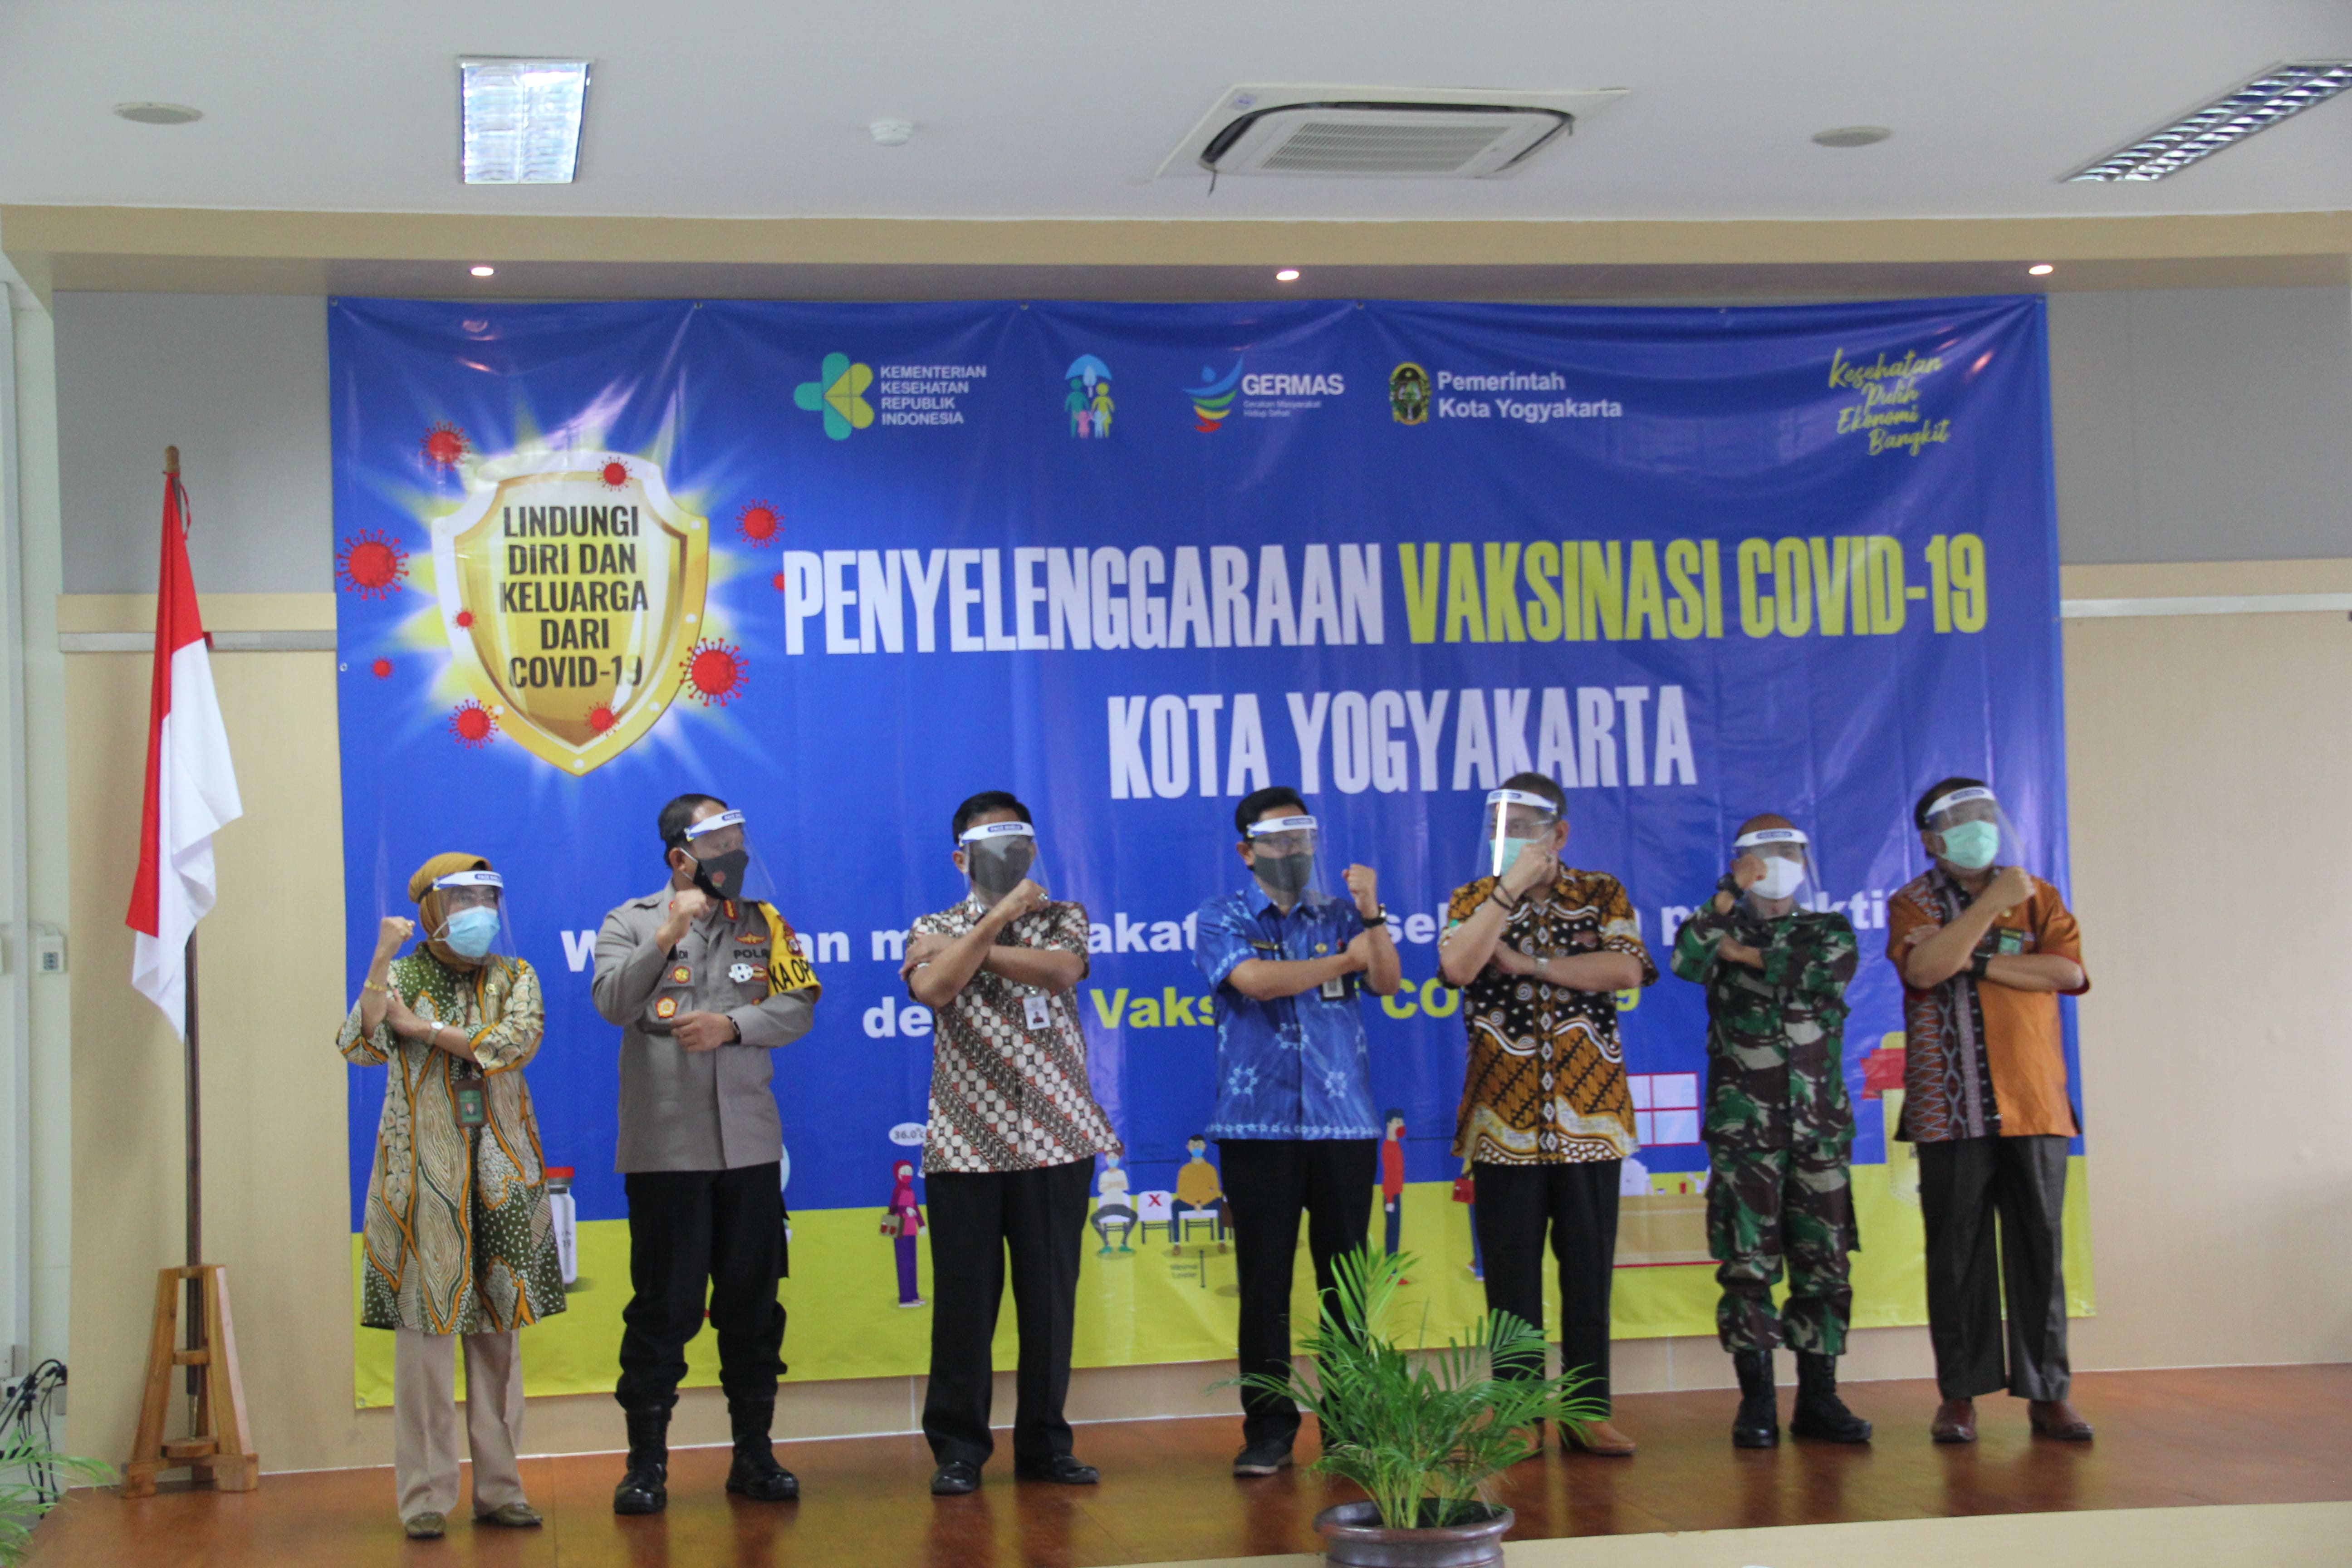 Ketua Pengadilan Negeri Yogyakarta Menjadi Penerima Pertama Vaksid Covid-19 di Kota Yogyakarta